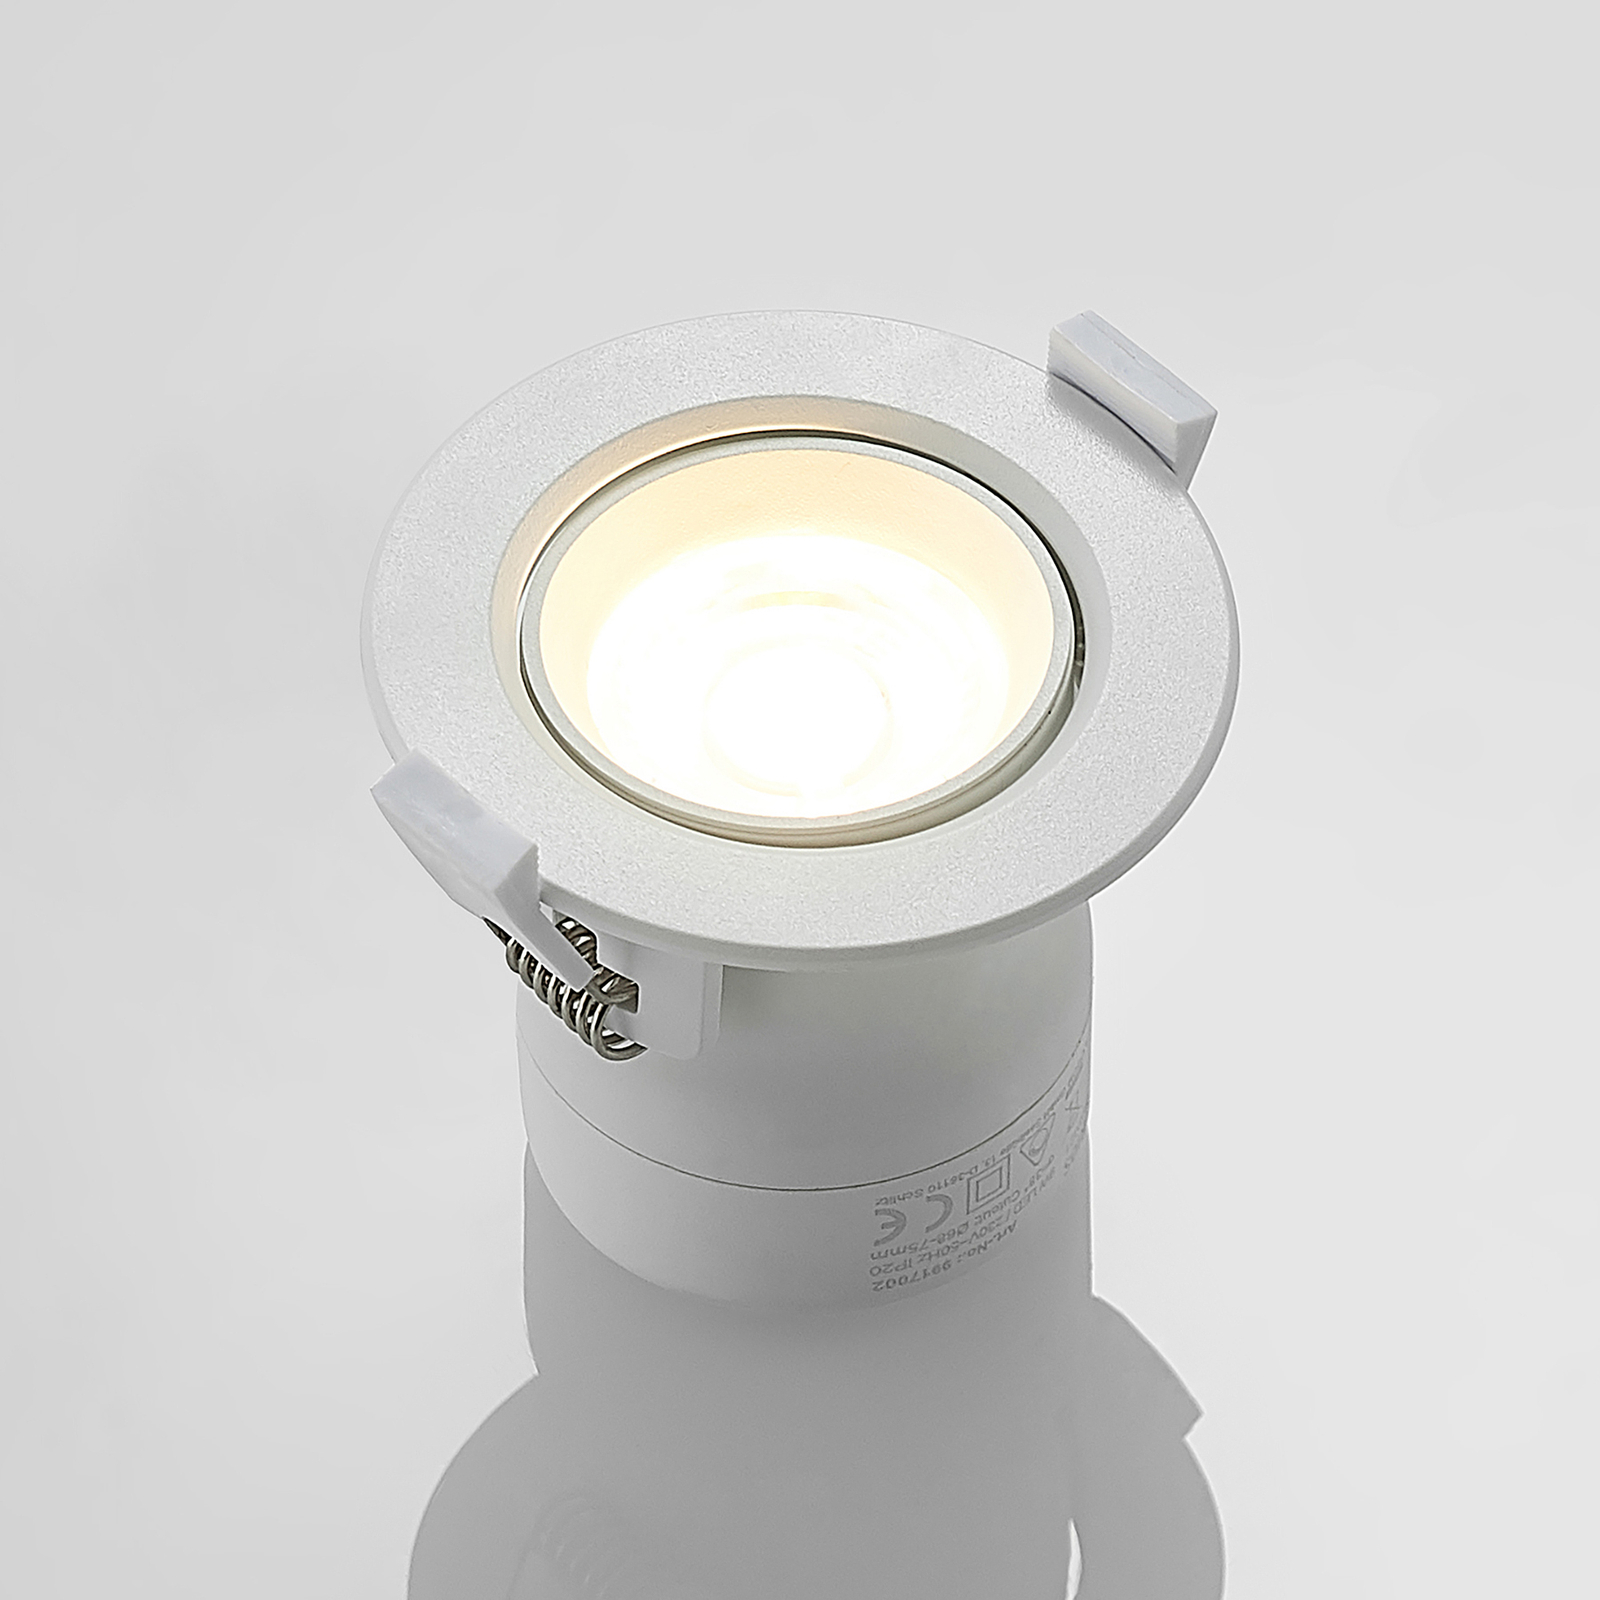 Prios LED лампа за вграждане Shima, бяла, 9W, 3000K, 3 броя, с възможност